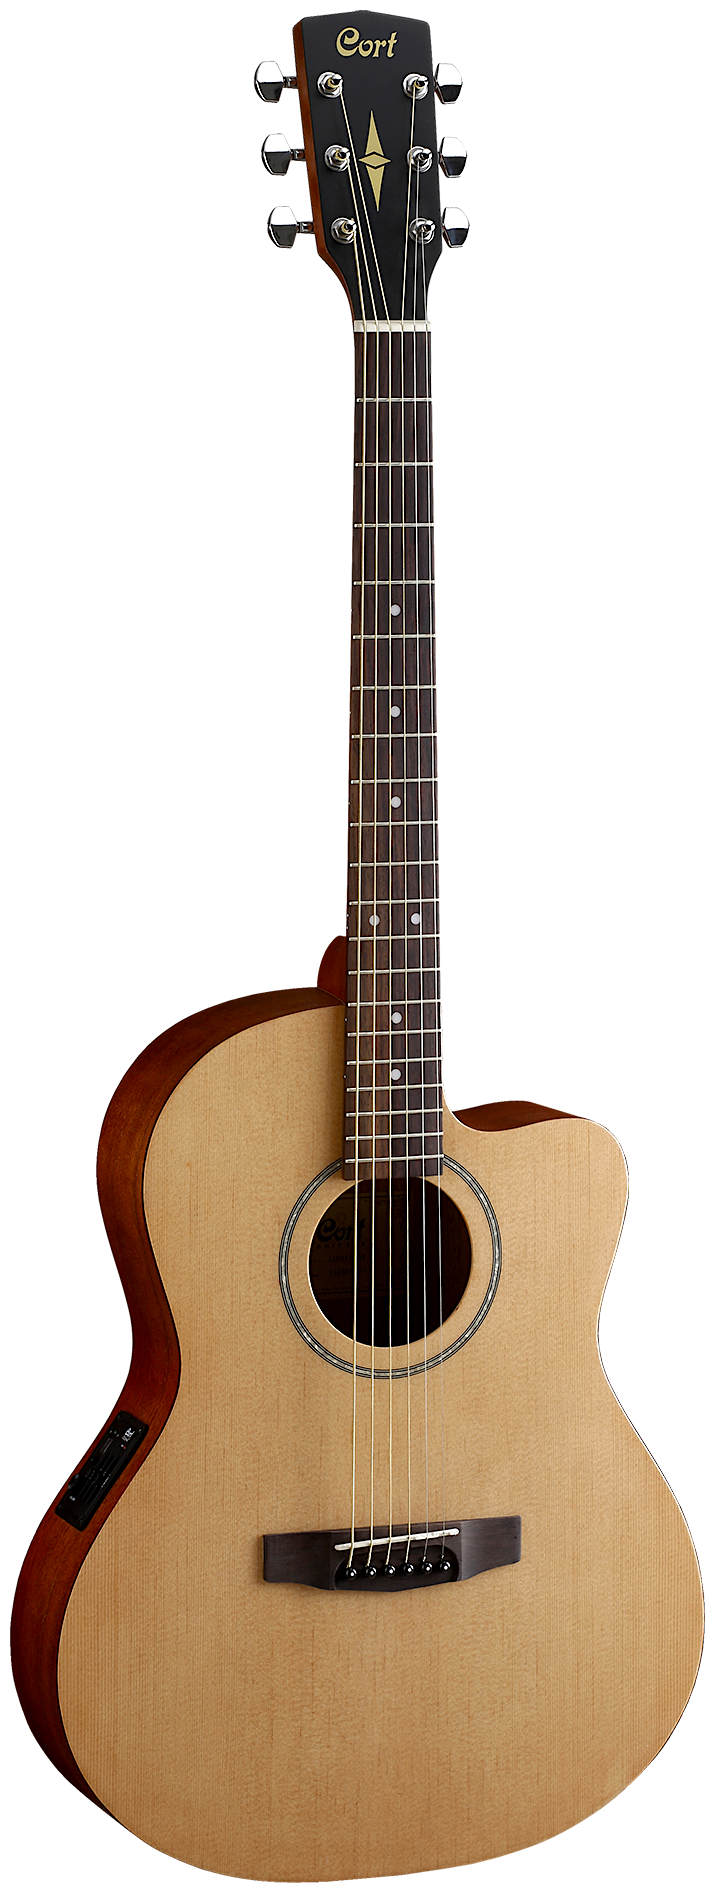 JADE1-OP Jade Series Акустическая гитара, с вырезом, цвет натуральный, Cort